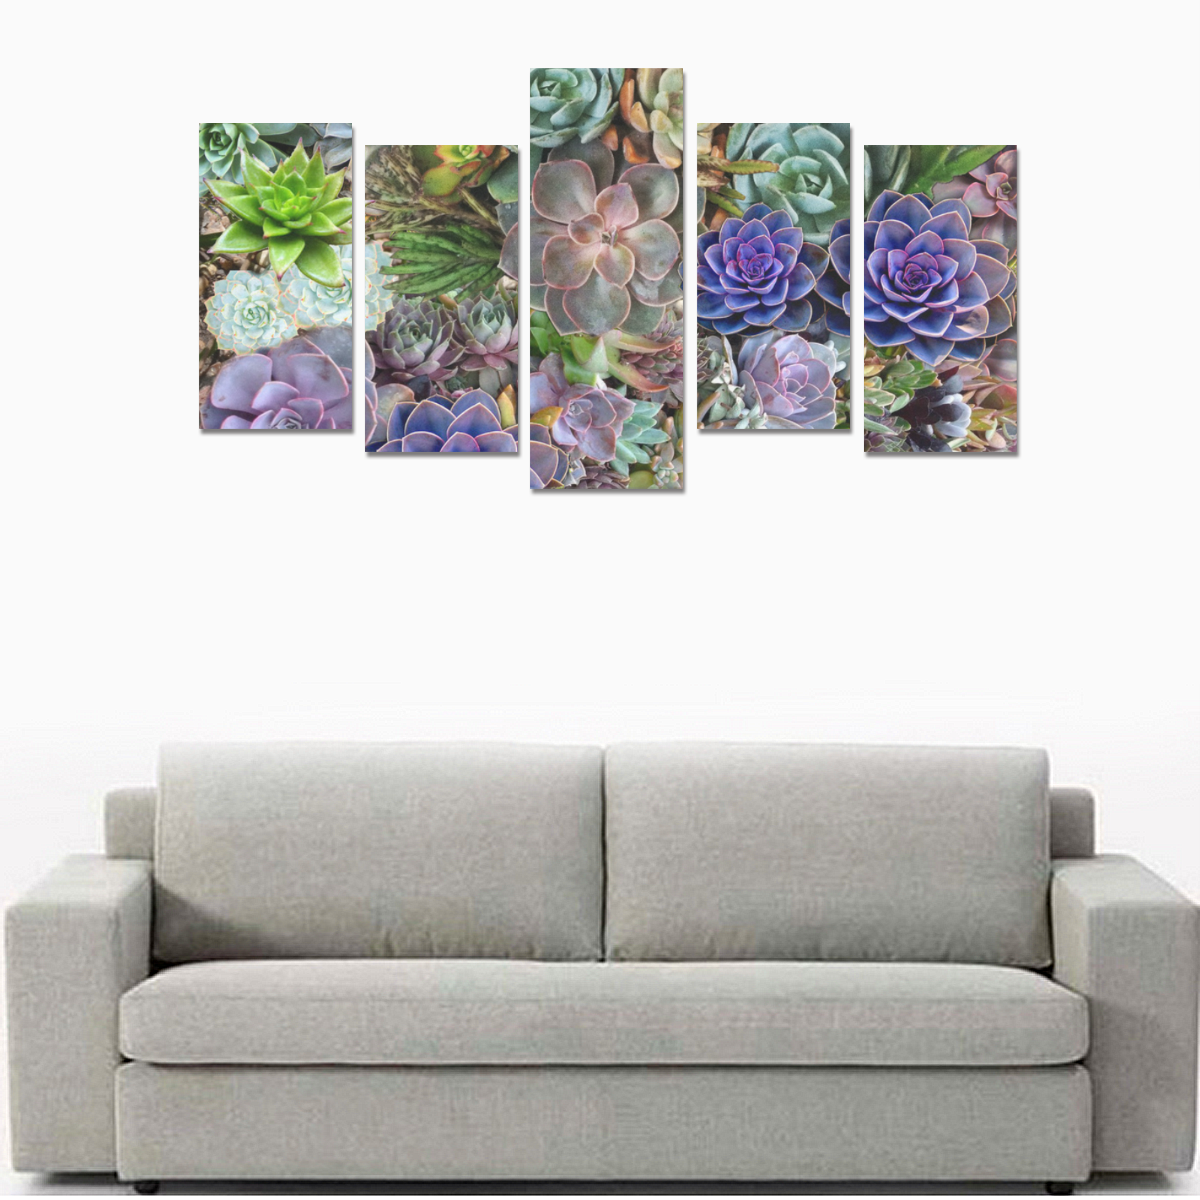 Succulent stories Canvas Print Sets E (No Frame)